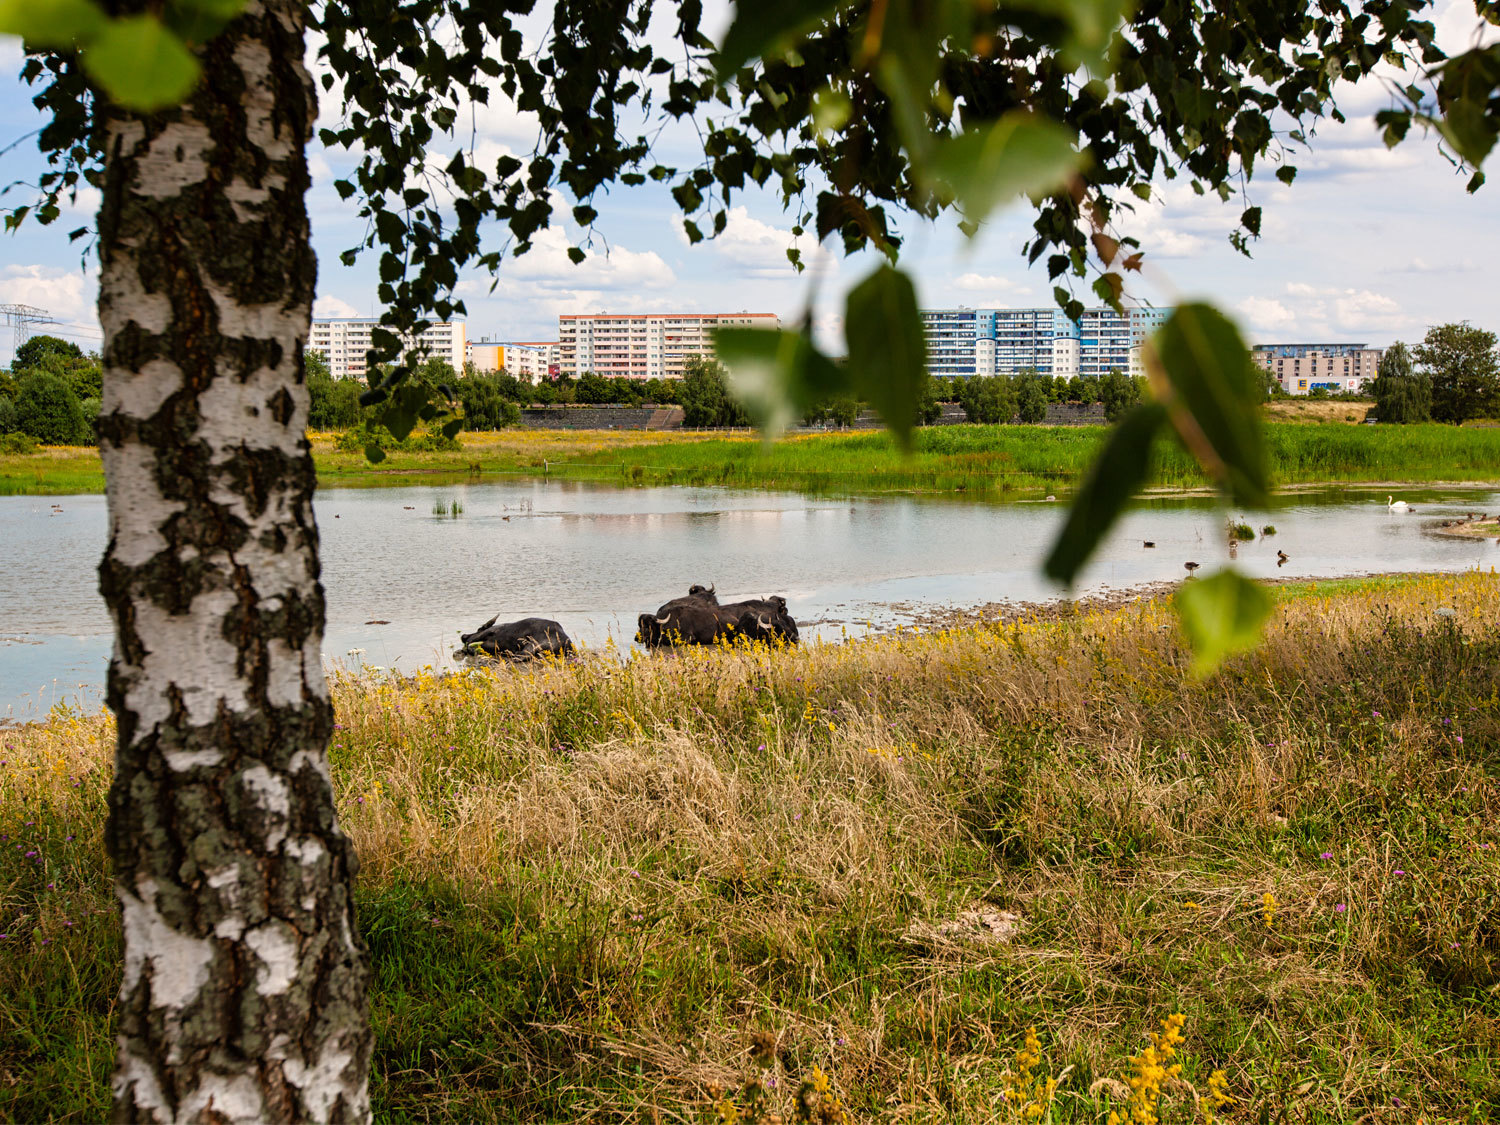 Im Hintergrund Wohnblöcke. Davor eine Grünfläche mit belaubten, grünen Bäumen. In einem Wasserloch davor sieht man 5 schwarze Wasserbüffel stehen. Im Vordergrund des Bildes auf der linken Seite eine Birke. 